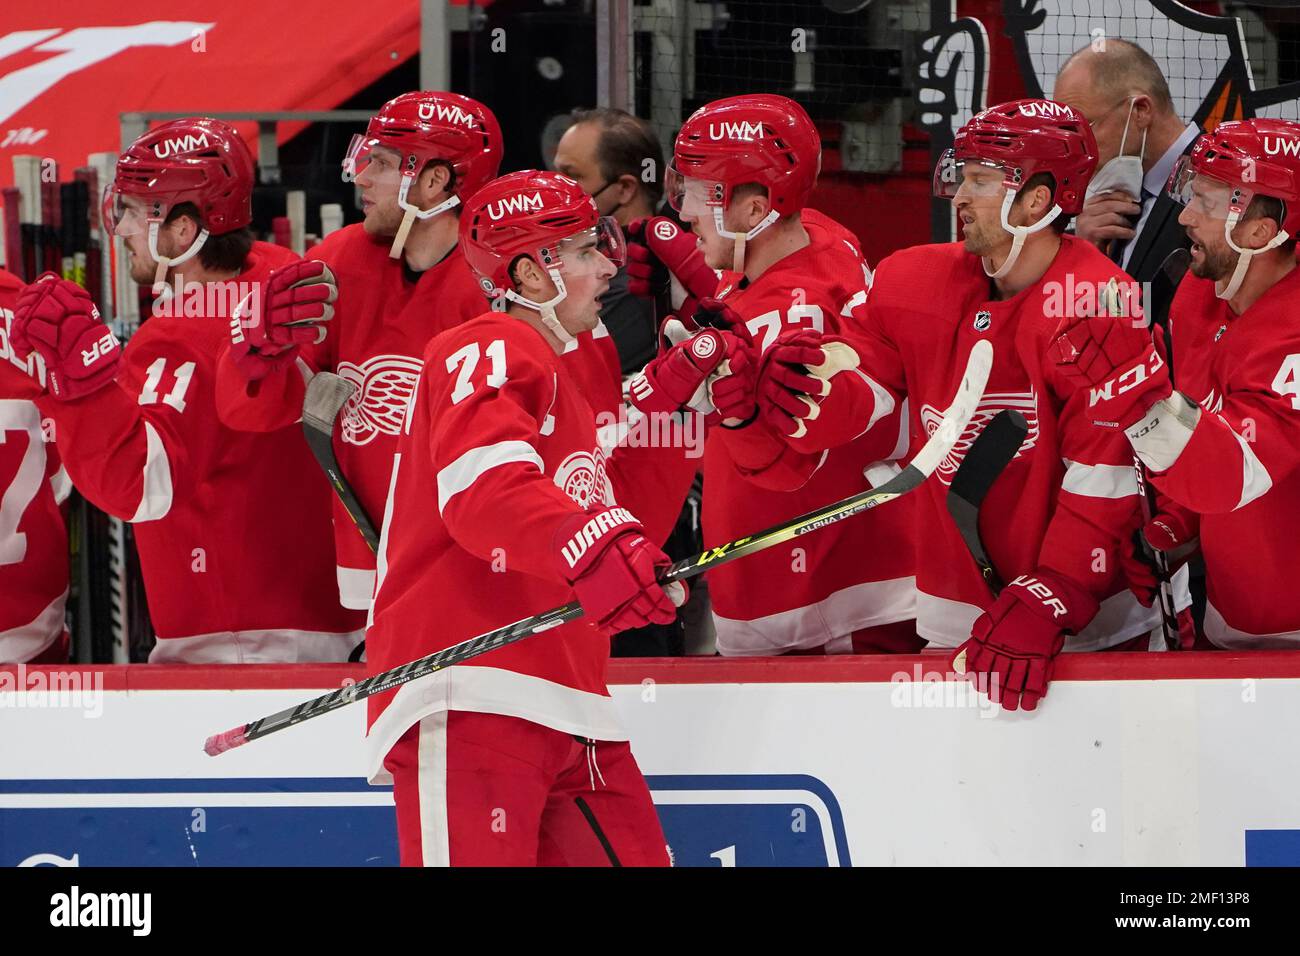 Dylan Larkin, Detroit Red Wings Stock Photo - Alamy